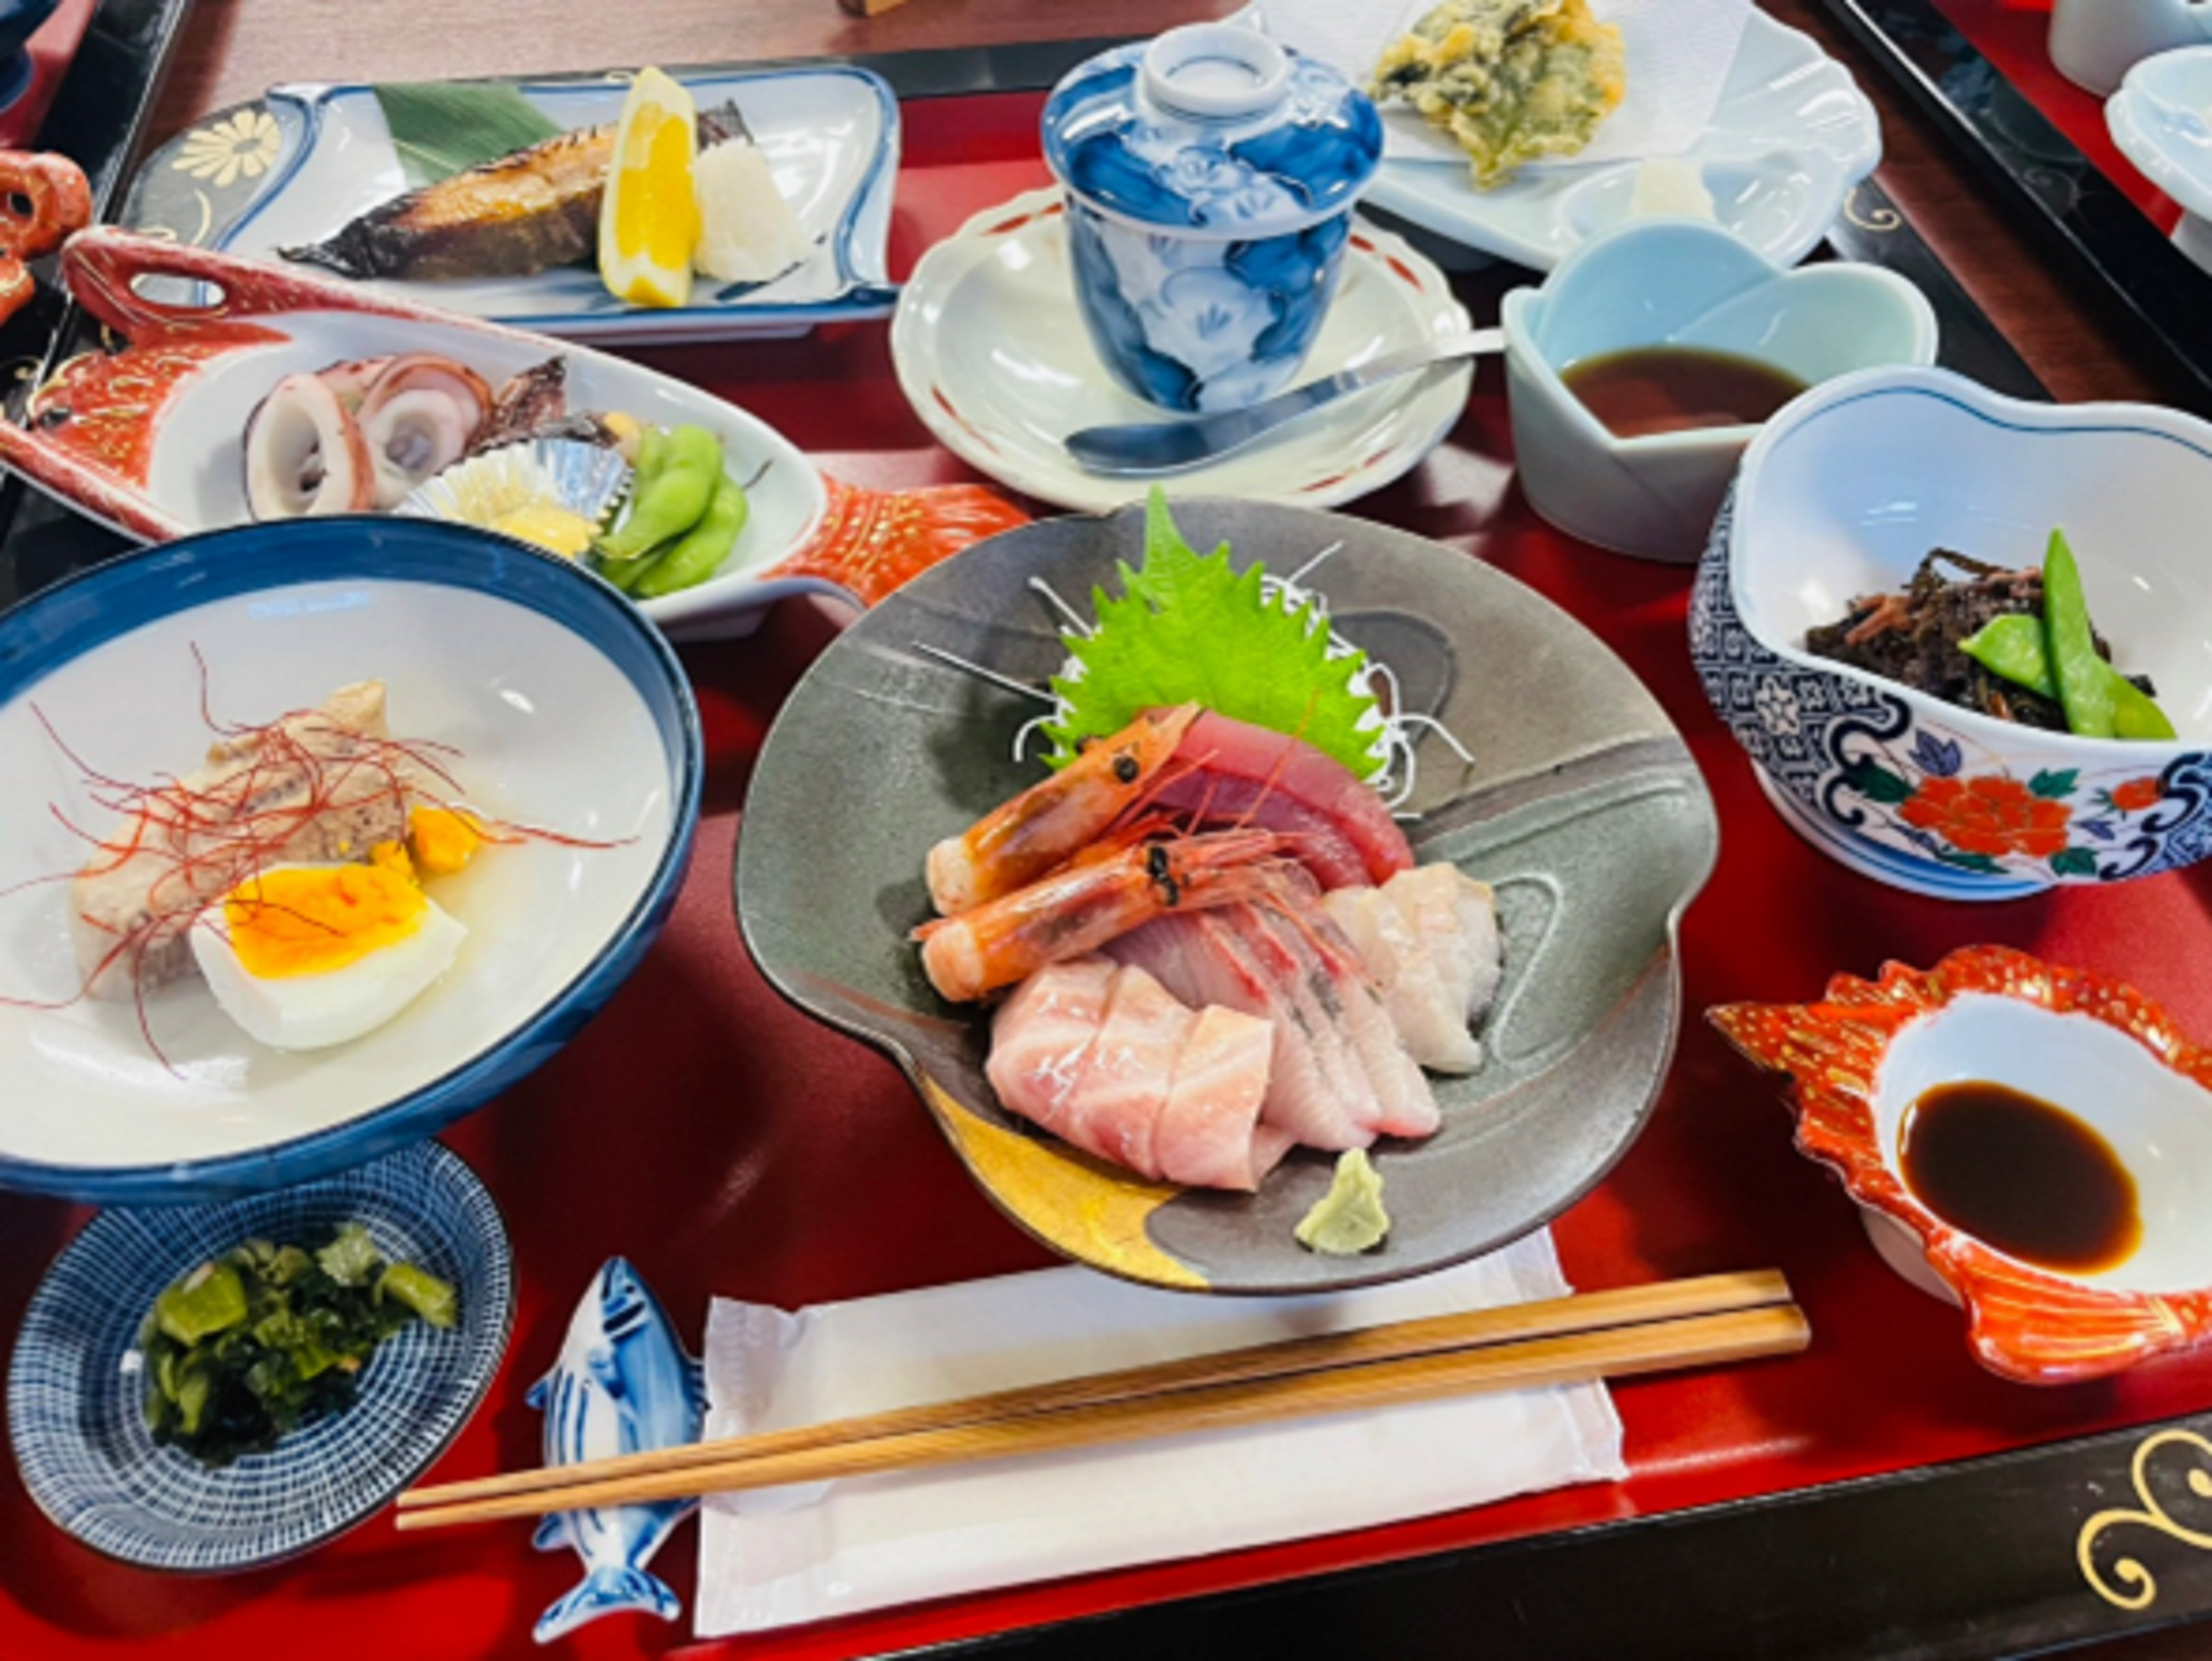 沢口旅館の食事。お刺身や焼き魚、アオサの茶碗蒸しや海藻の炒め煮